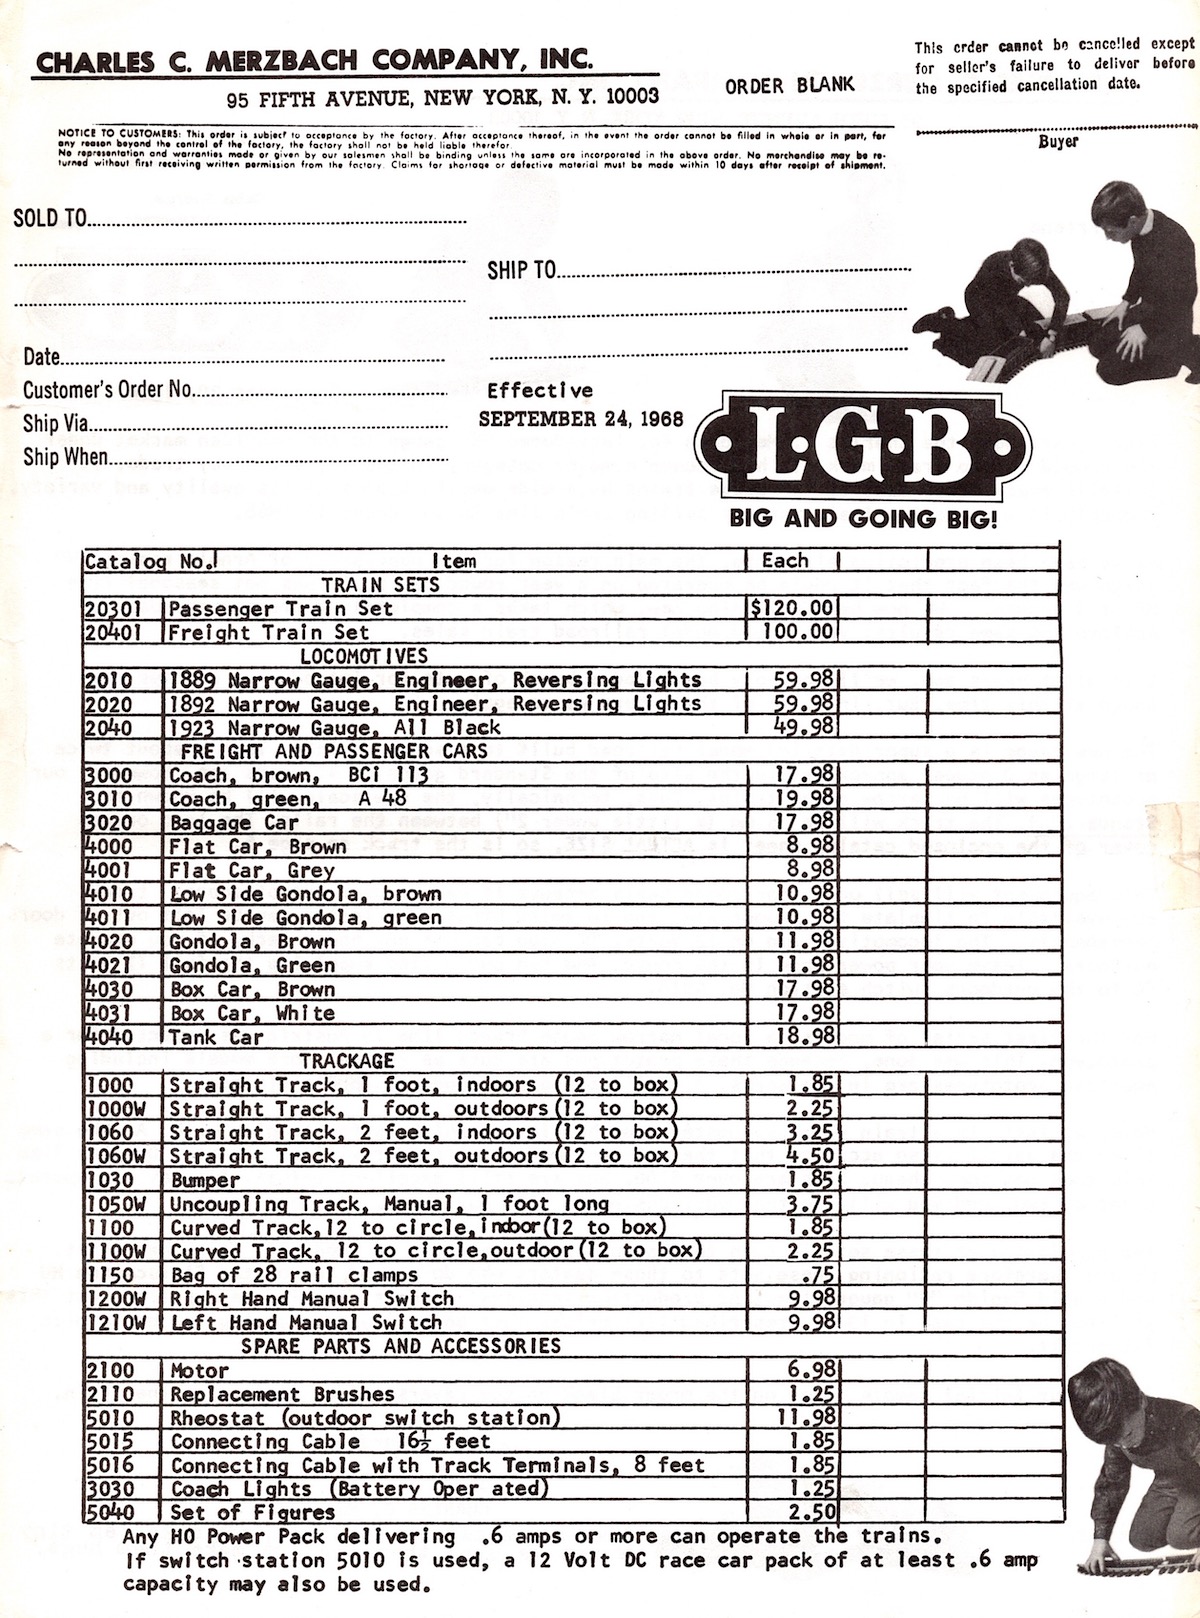 LGB Preisliste (Price list) 1968 - USA